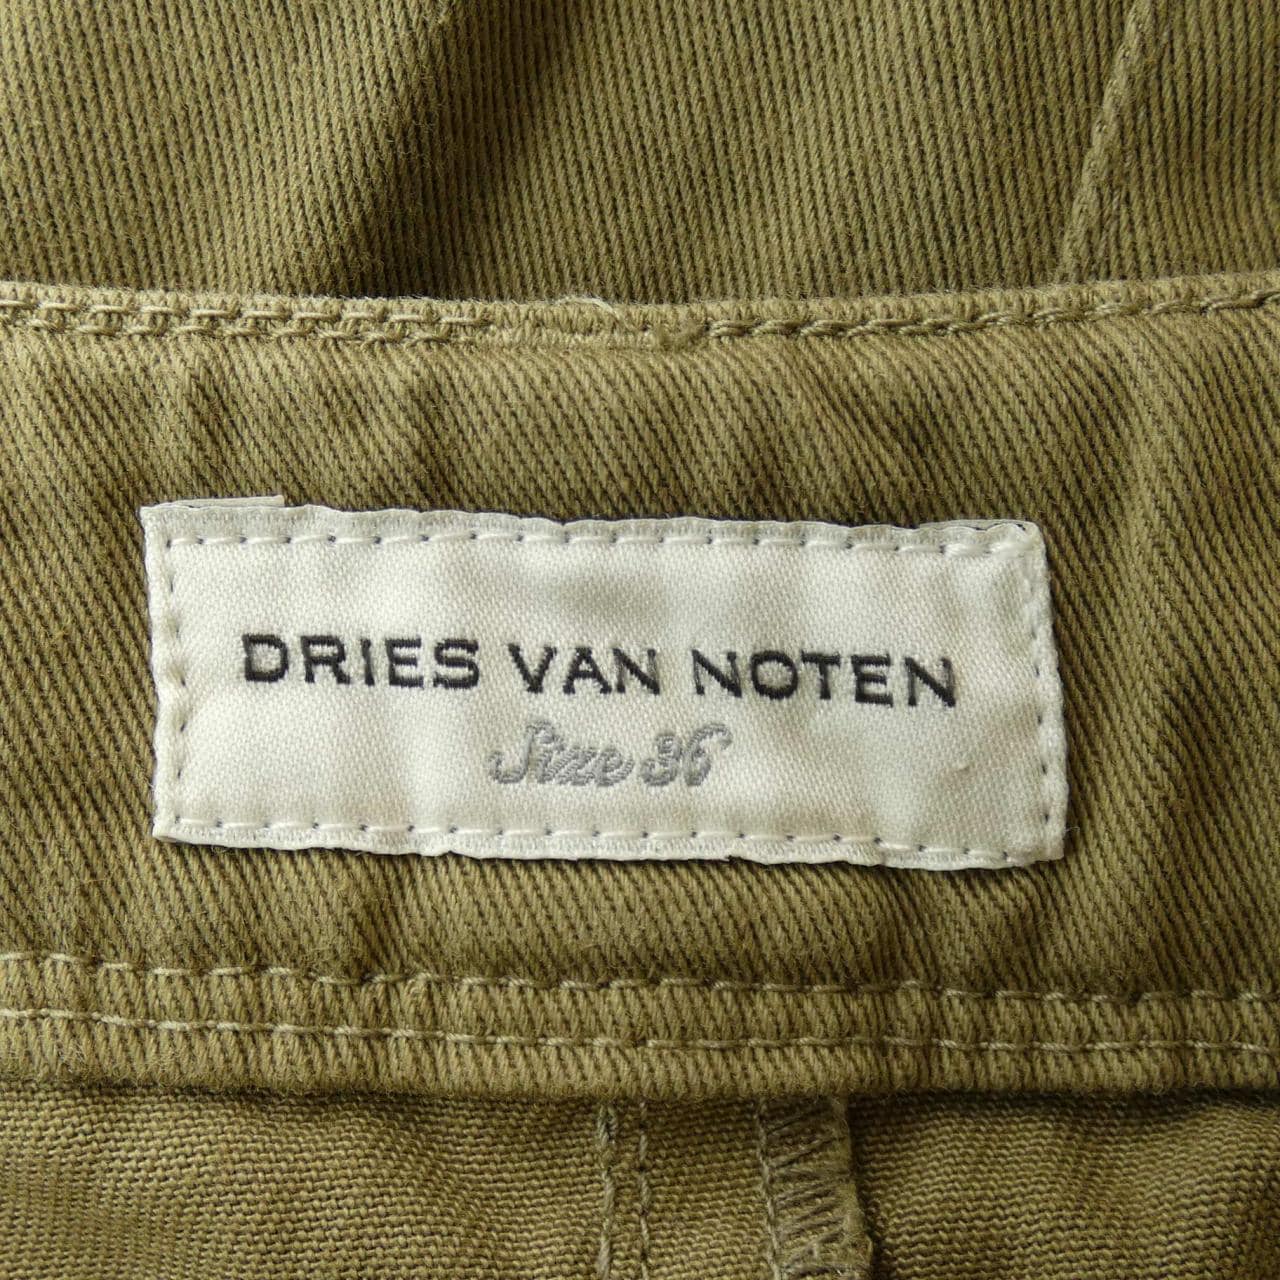 DRIES VAN NOTEN德赖斯·范诺顿 (Dries Van Noten) 半身裙